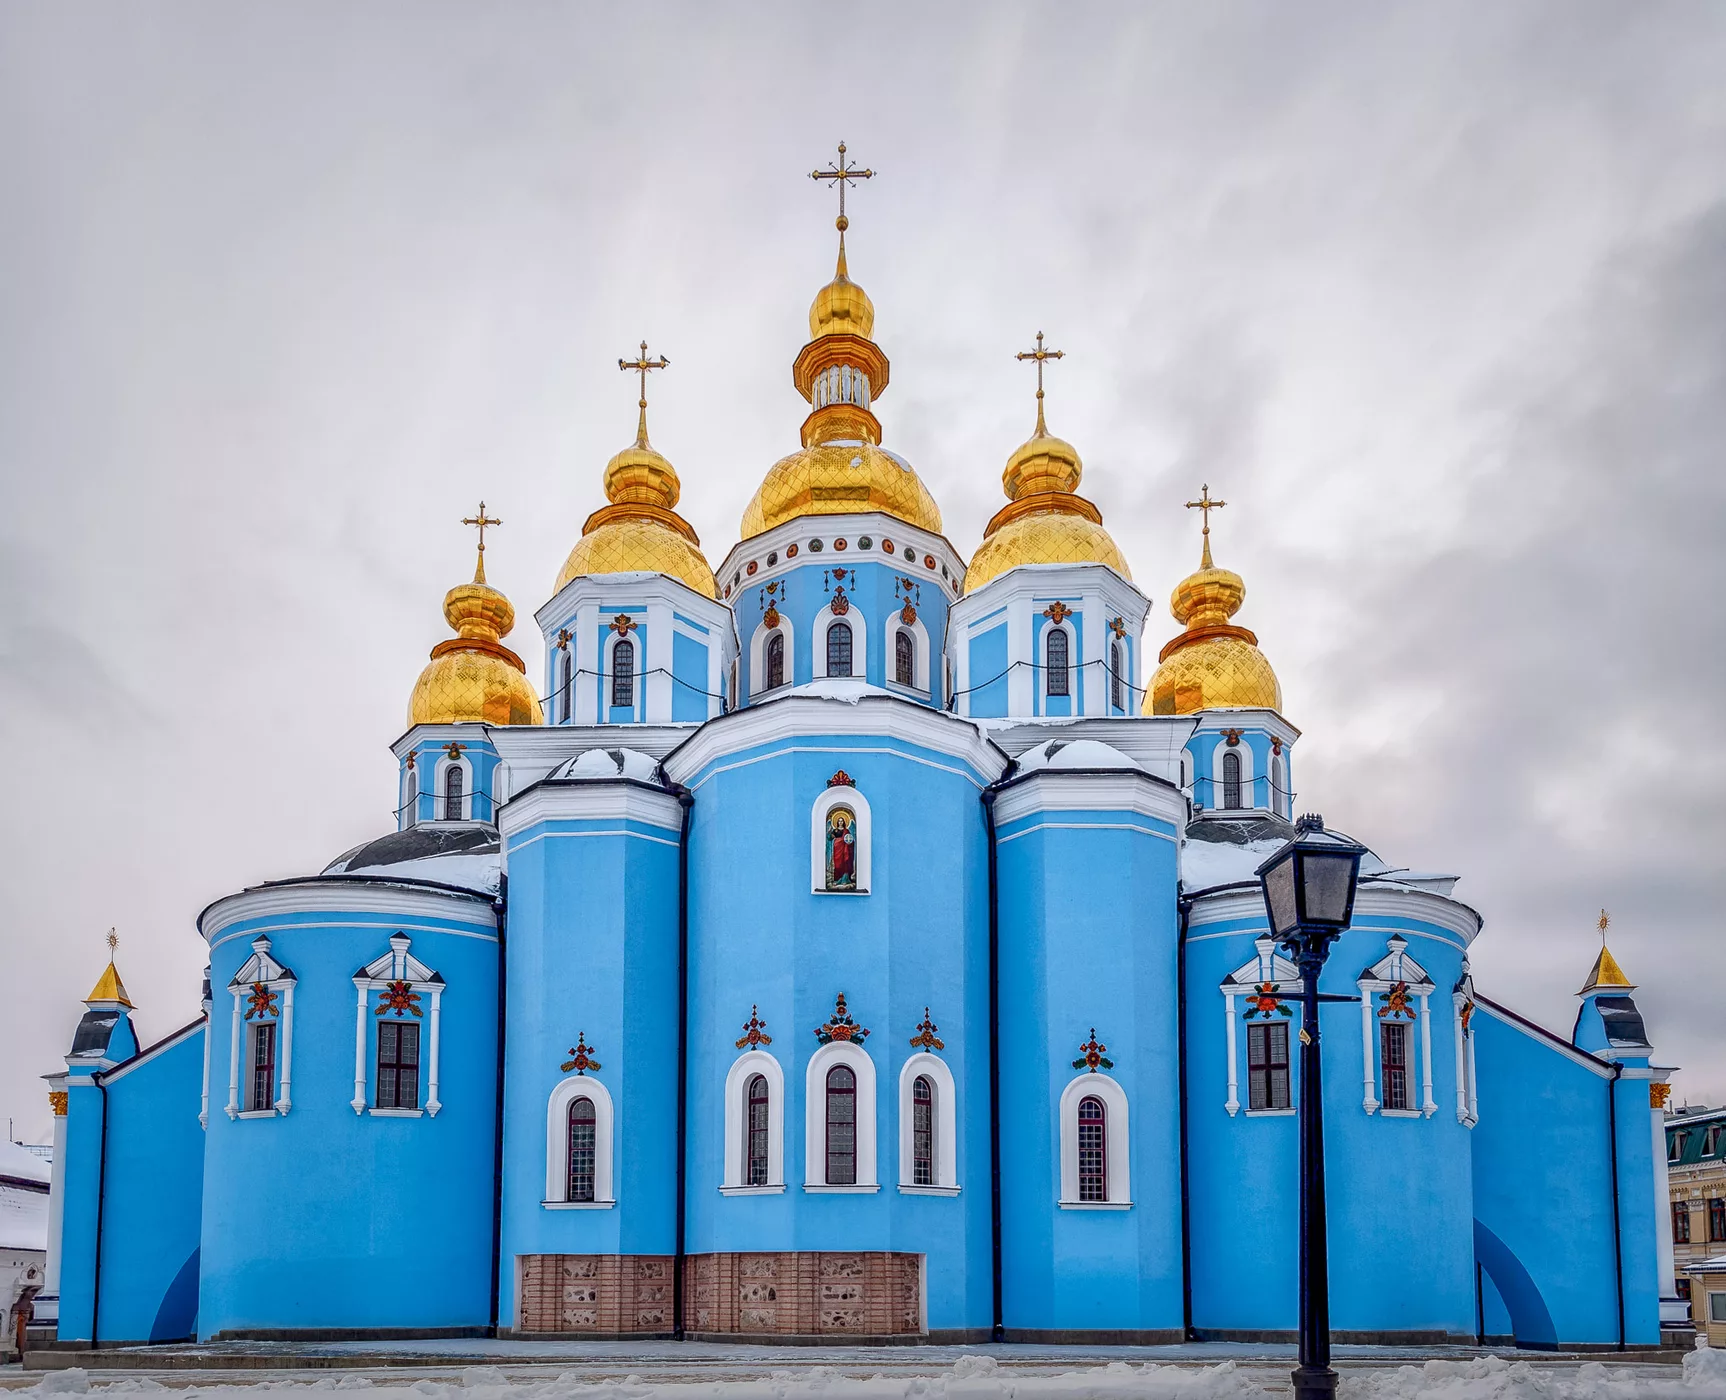 St. Michael's Monastery, Ukraine